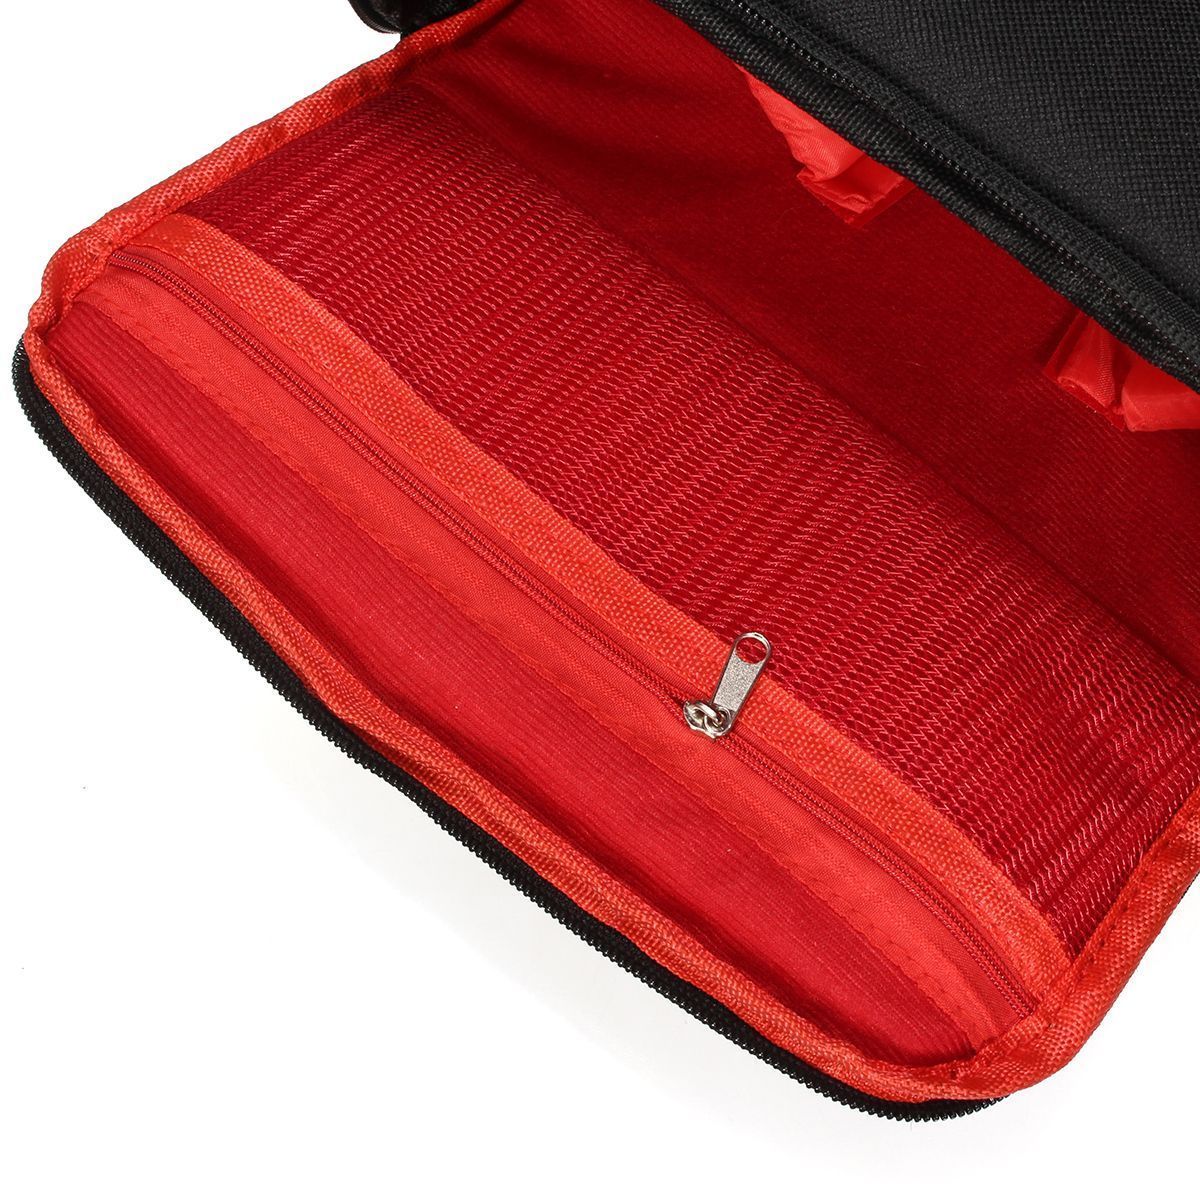 Travel-Carry-Bag-Waterproof-Case-Shoulder-Strap-For-Nikon-For-Canon-DSLR-Digital-Camera-1404056